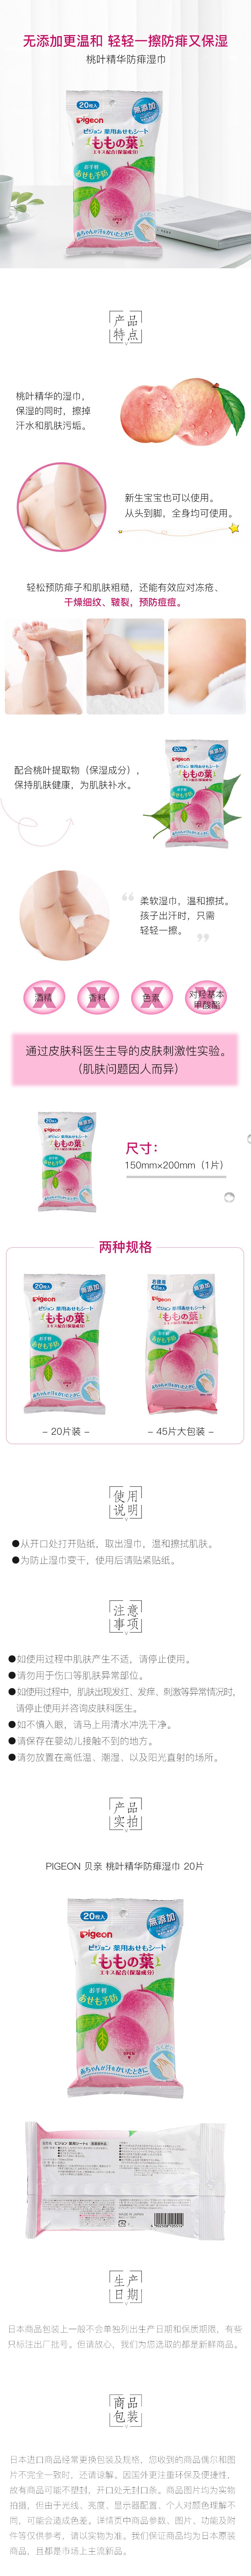 【日本直邮】PIGEON 贝亲 桃叶精华防痱湿巾20片